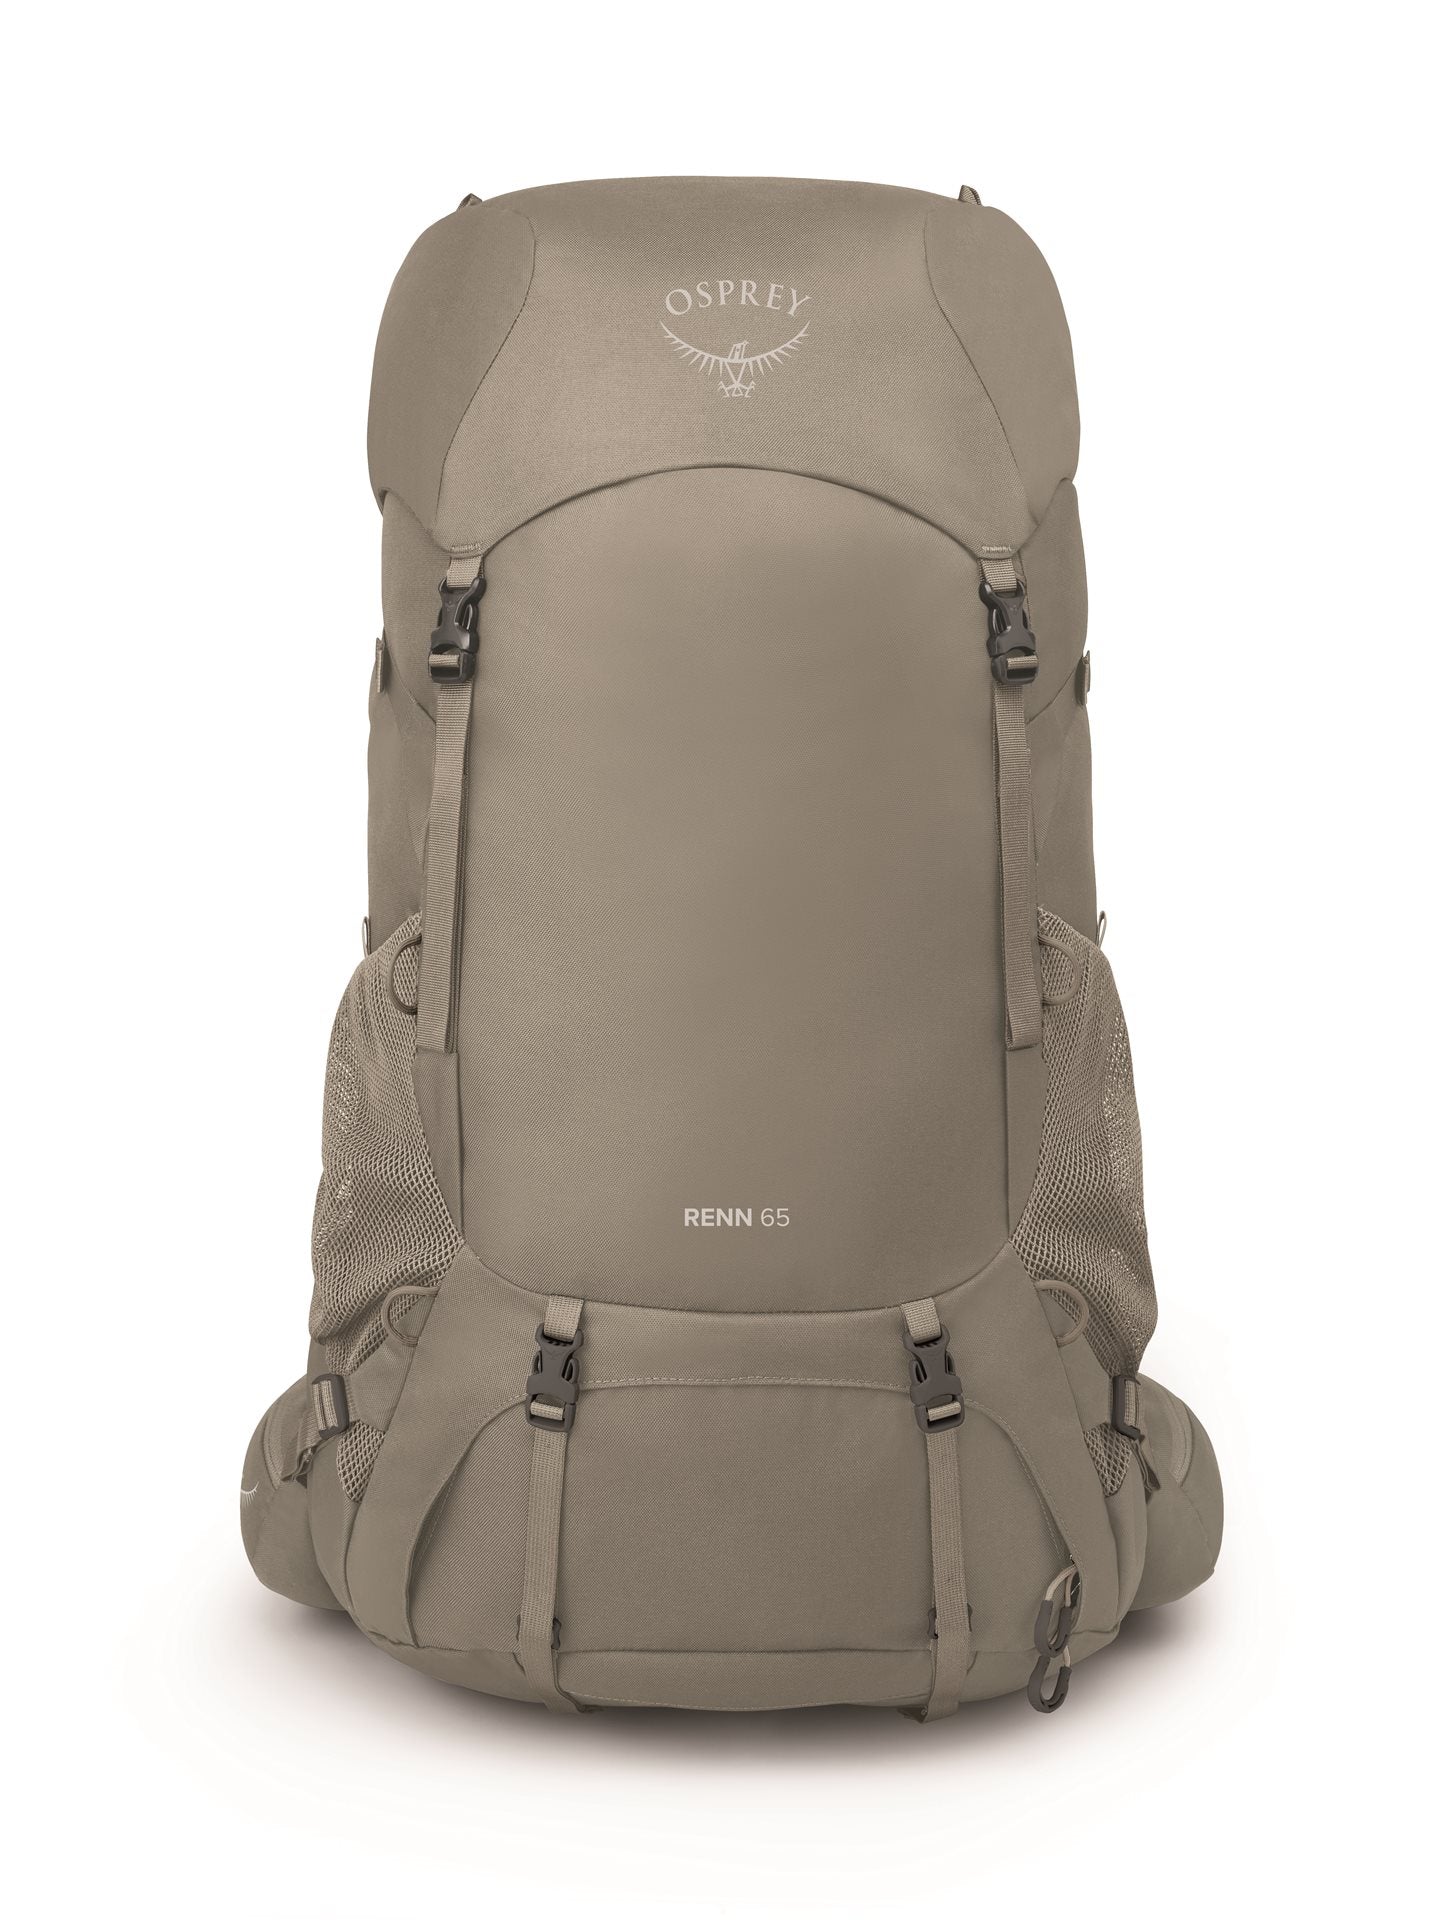 Osprey Renn 65 - Pediment Grey/Linen Tan Backpack - Reisartikelen-nl